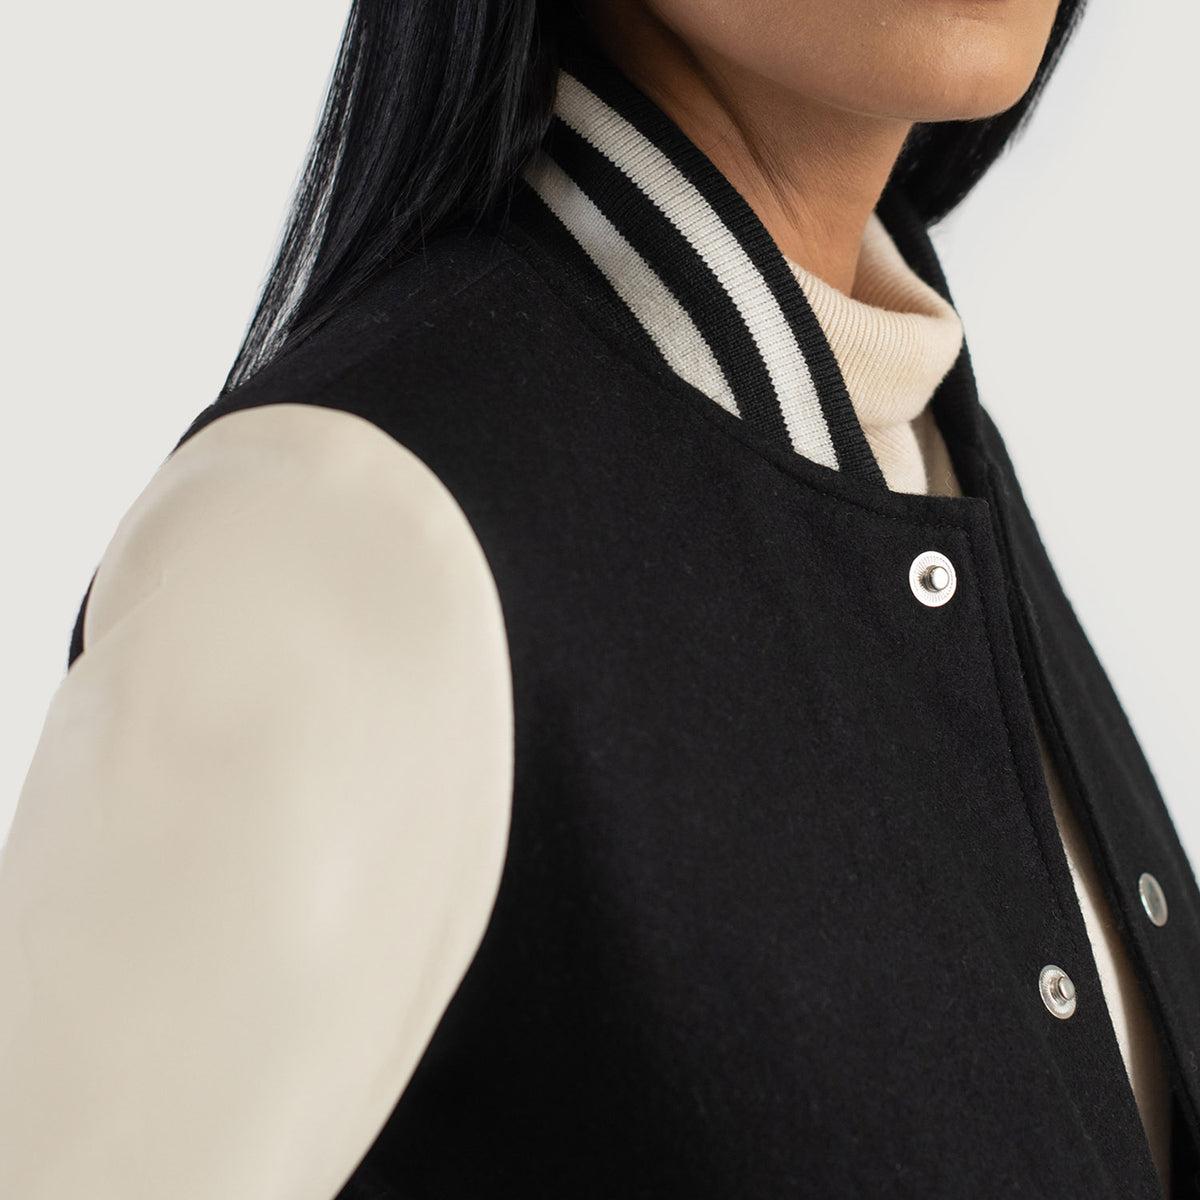 Savant Black & White Hybrid Varsity Jacket